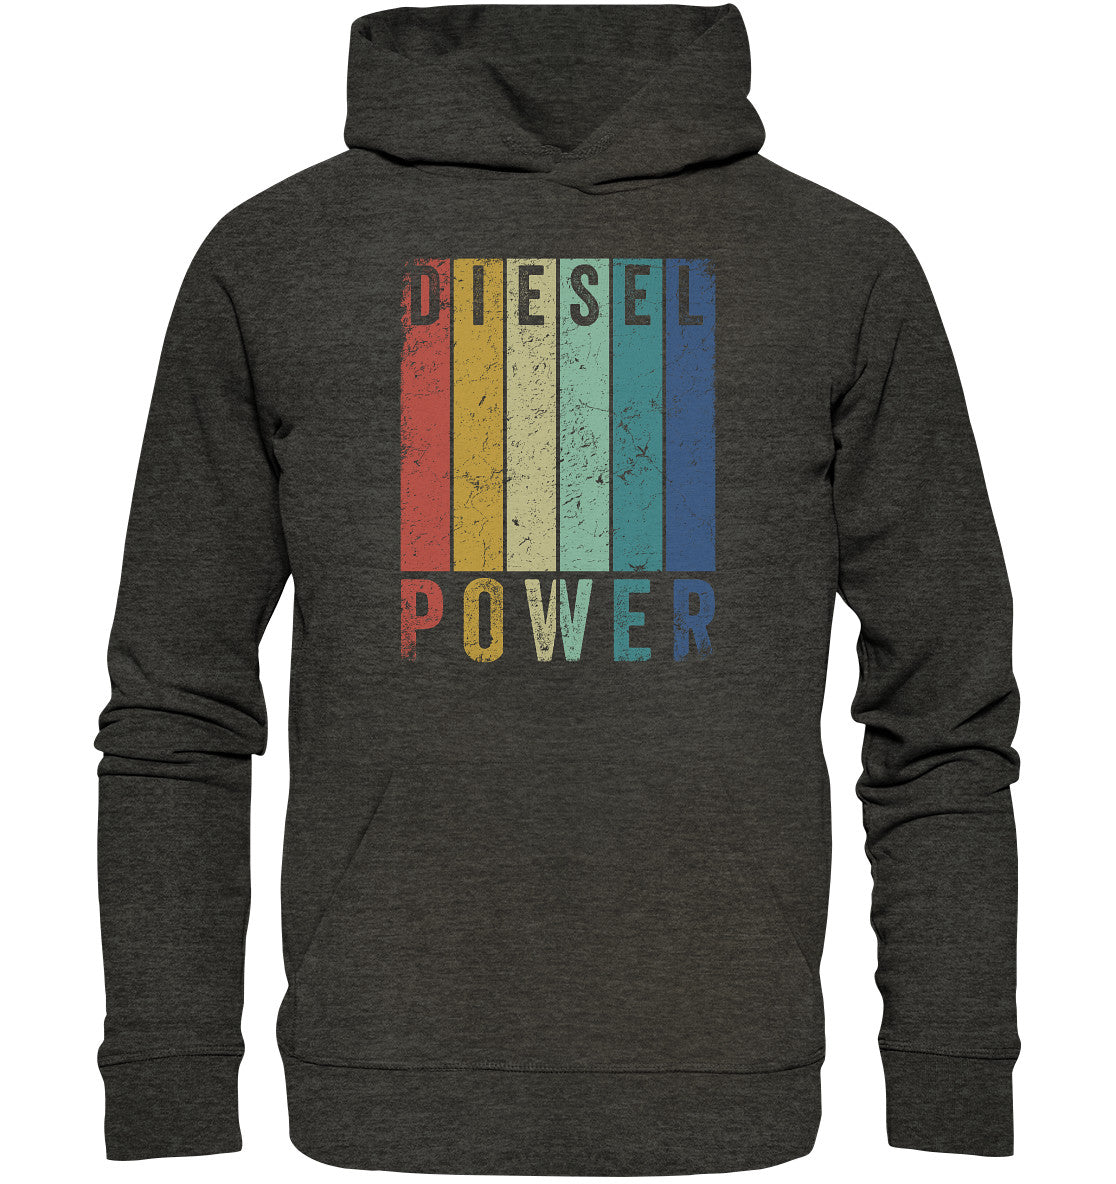 Diesel Power - Organic   Hoodie